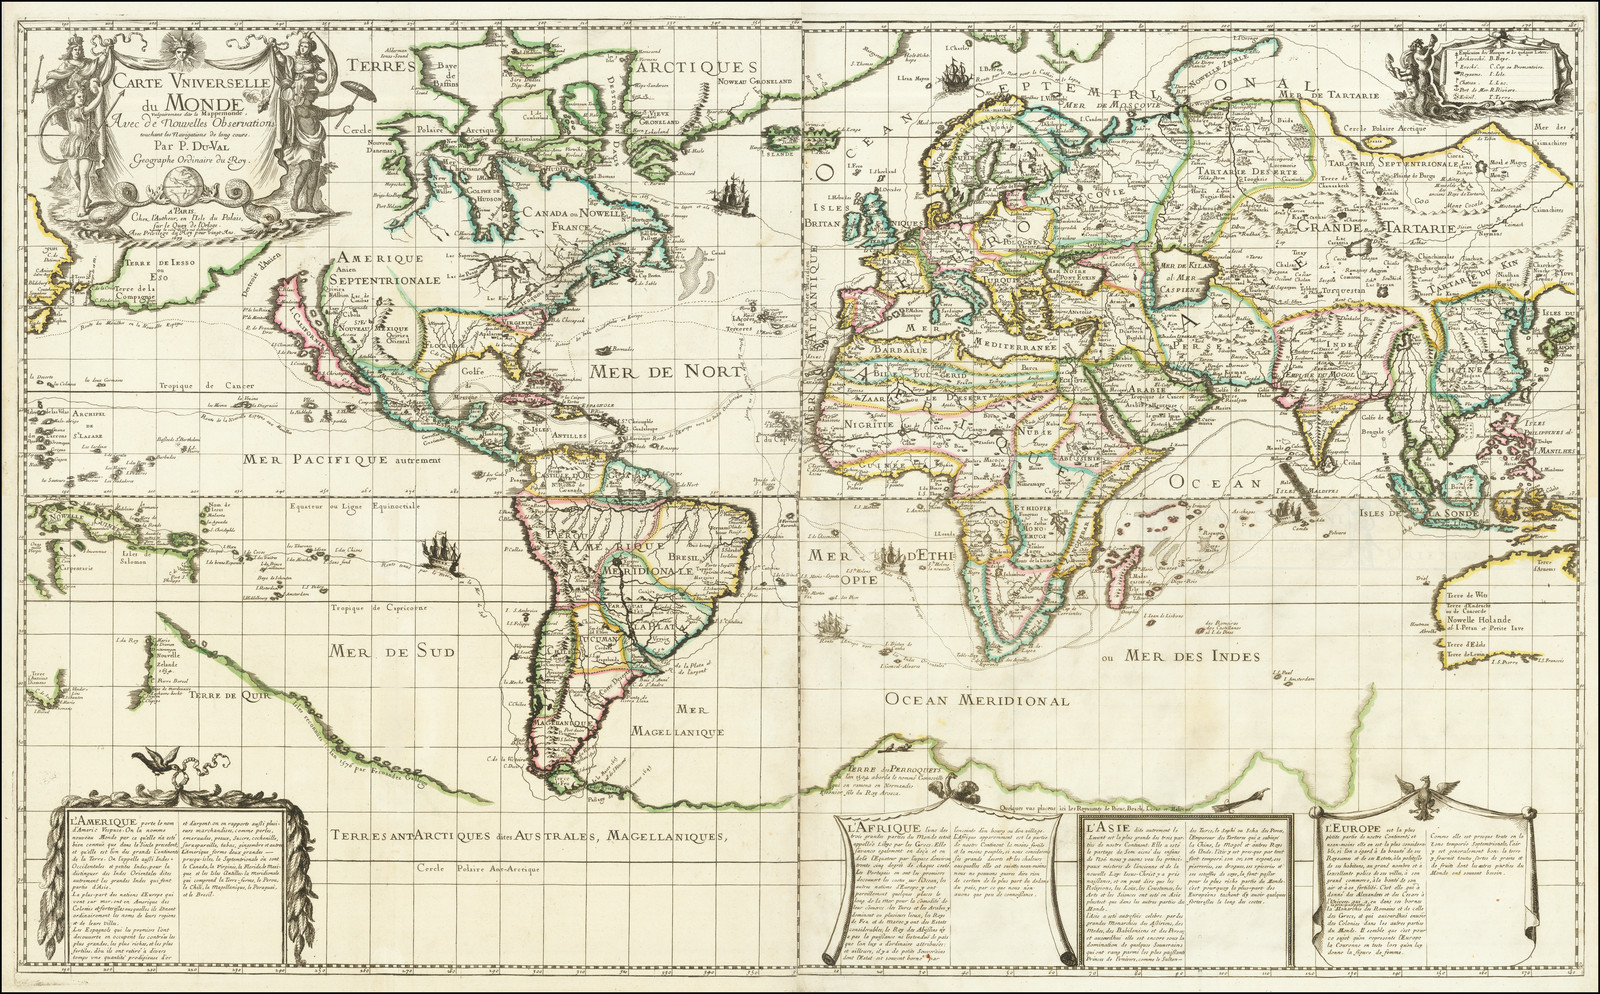 La mappemonde géante : Une carte du monde immense !